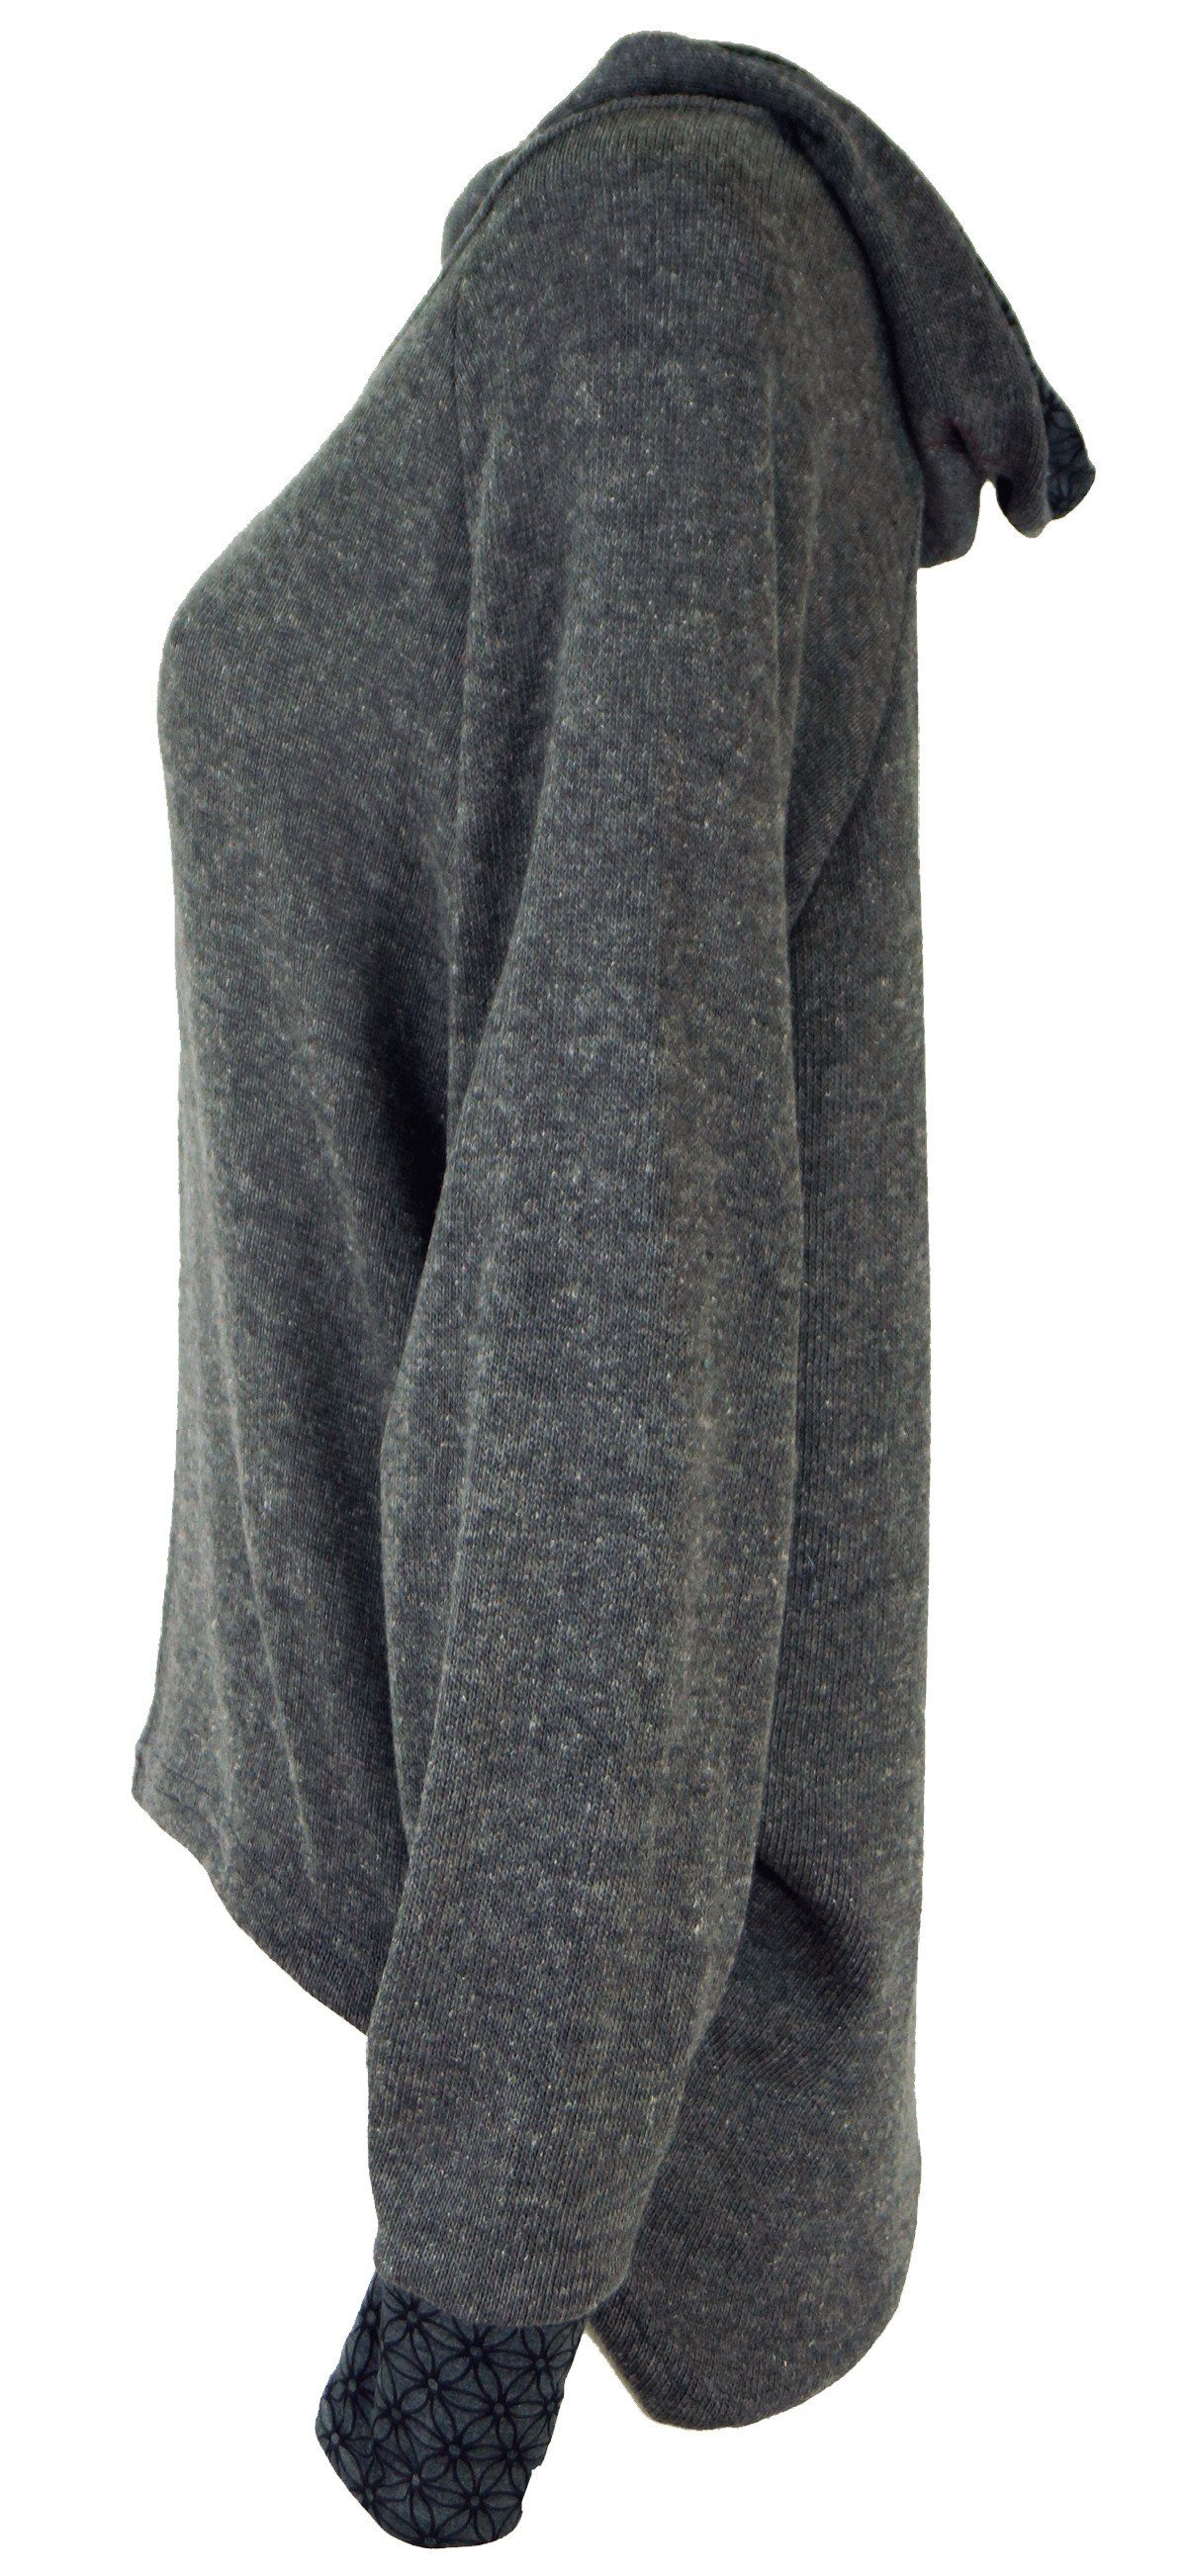 Bekleidung Kapuzenpullover Pullover, Guru-Shop alternative Sweatshirt, Longsleeve grau Hoody, -..